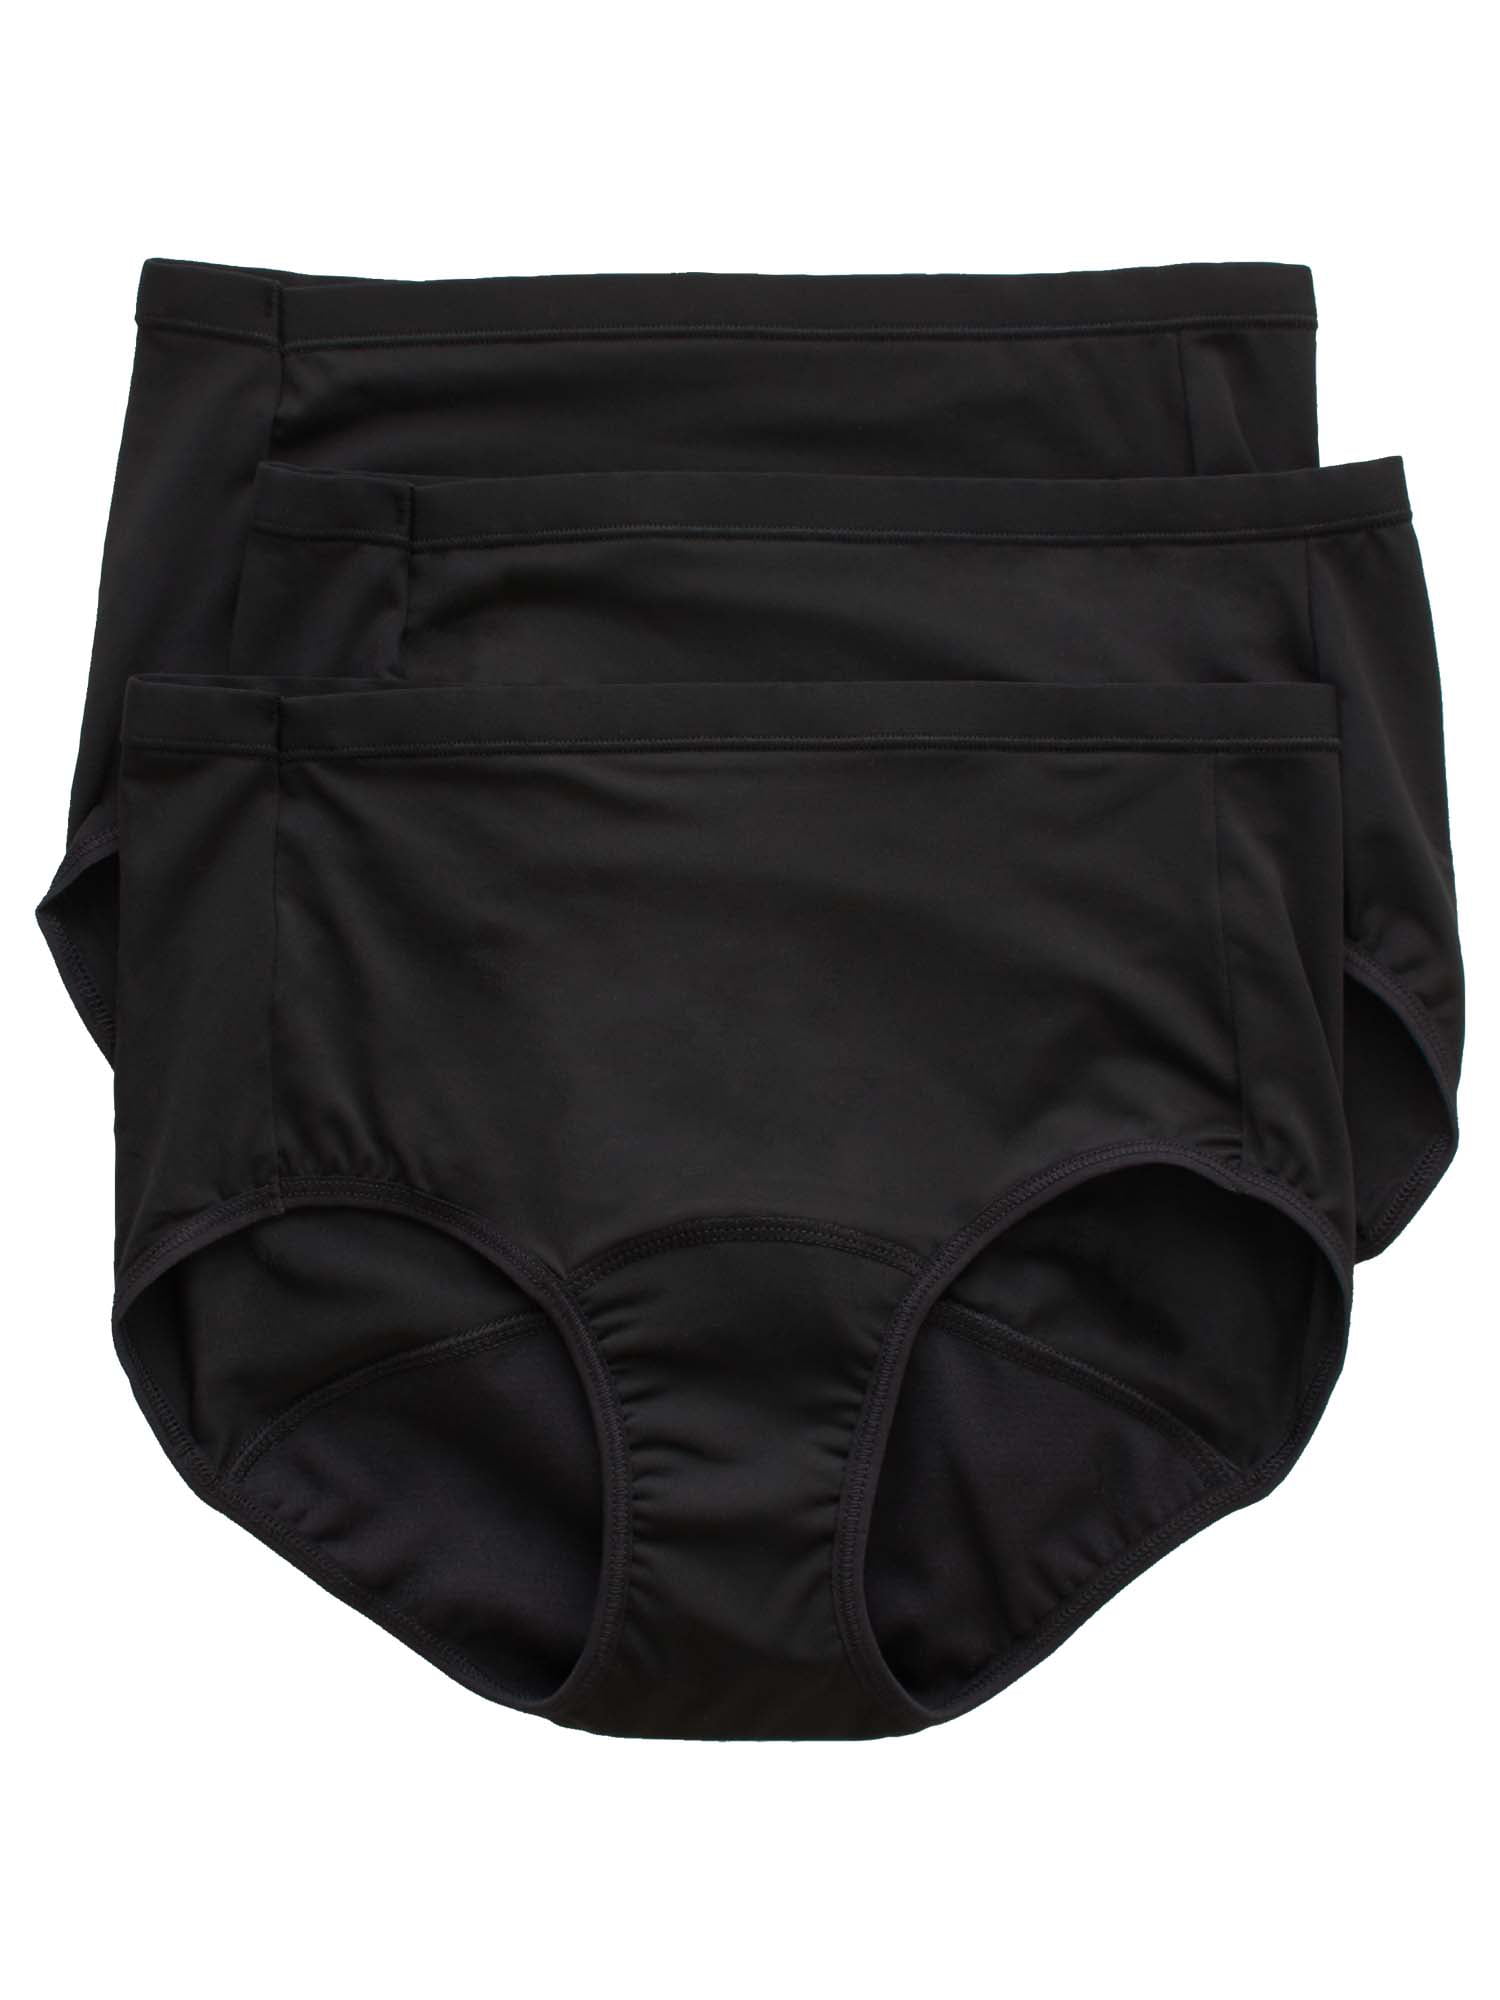 Hanes Comfort, Period.™ Briefs Underwear, Light Leaks, Black, 3-Pack 6 ...